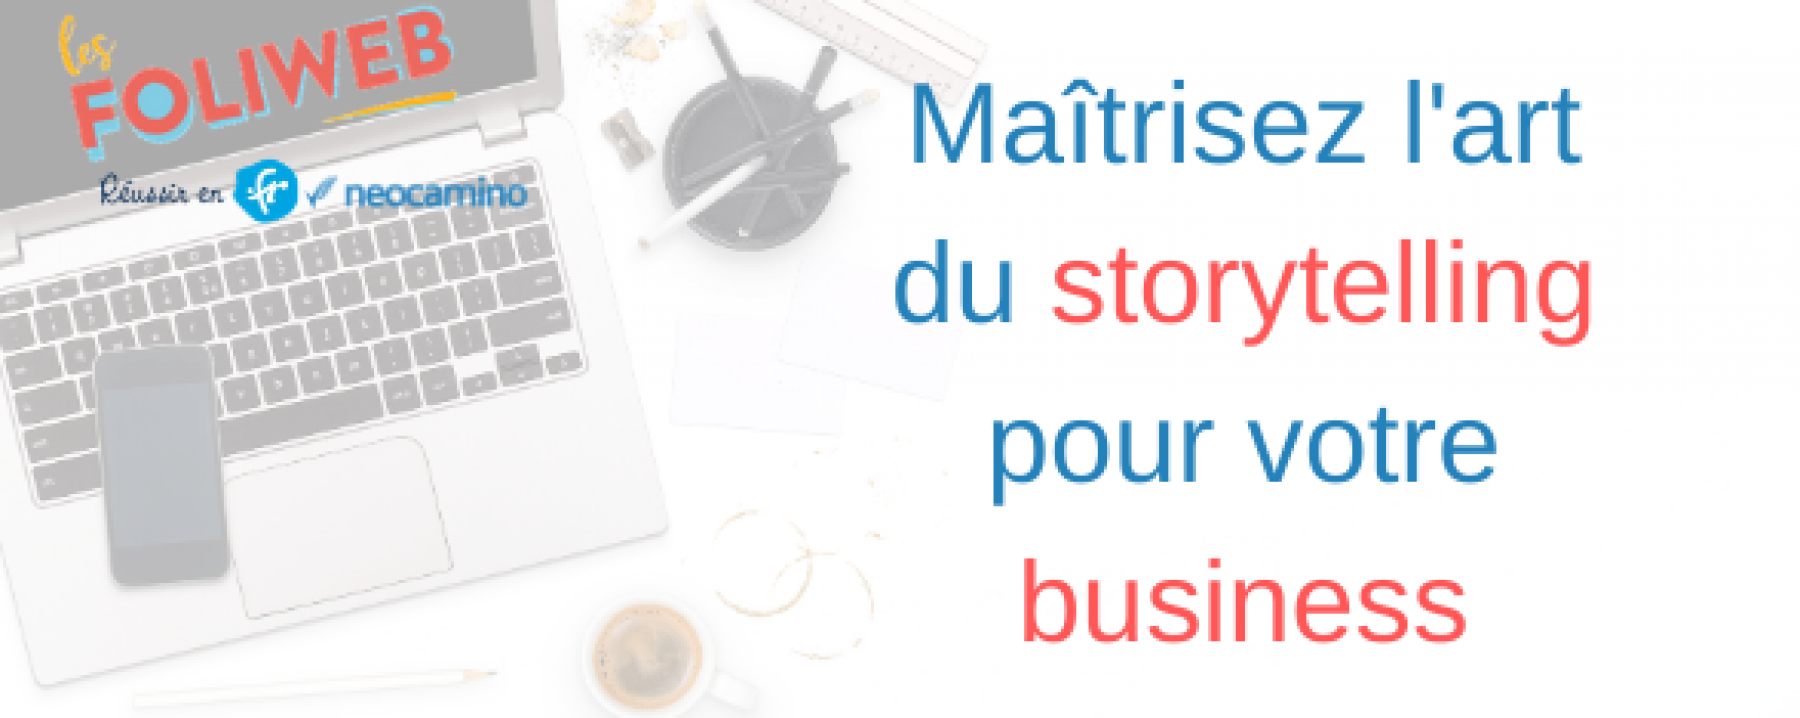 Webinar Maîtrisez l'art du storytelling pour votre business, le 11 mai 2020, organisé par La Foliweb